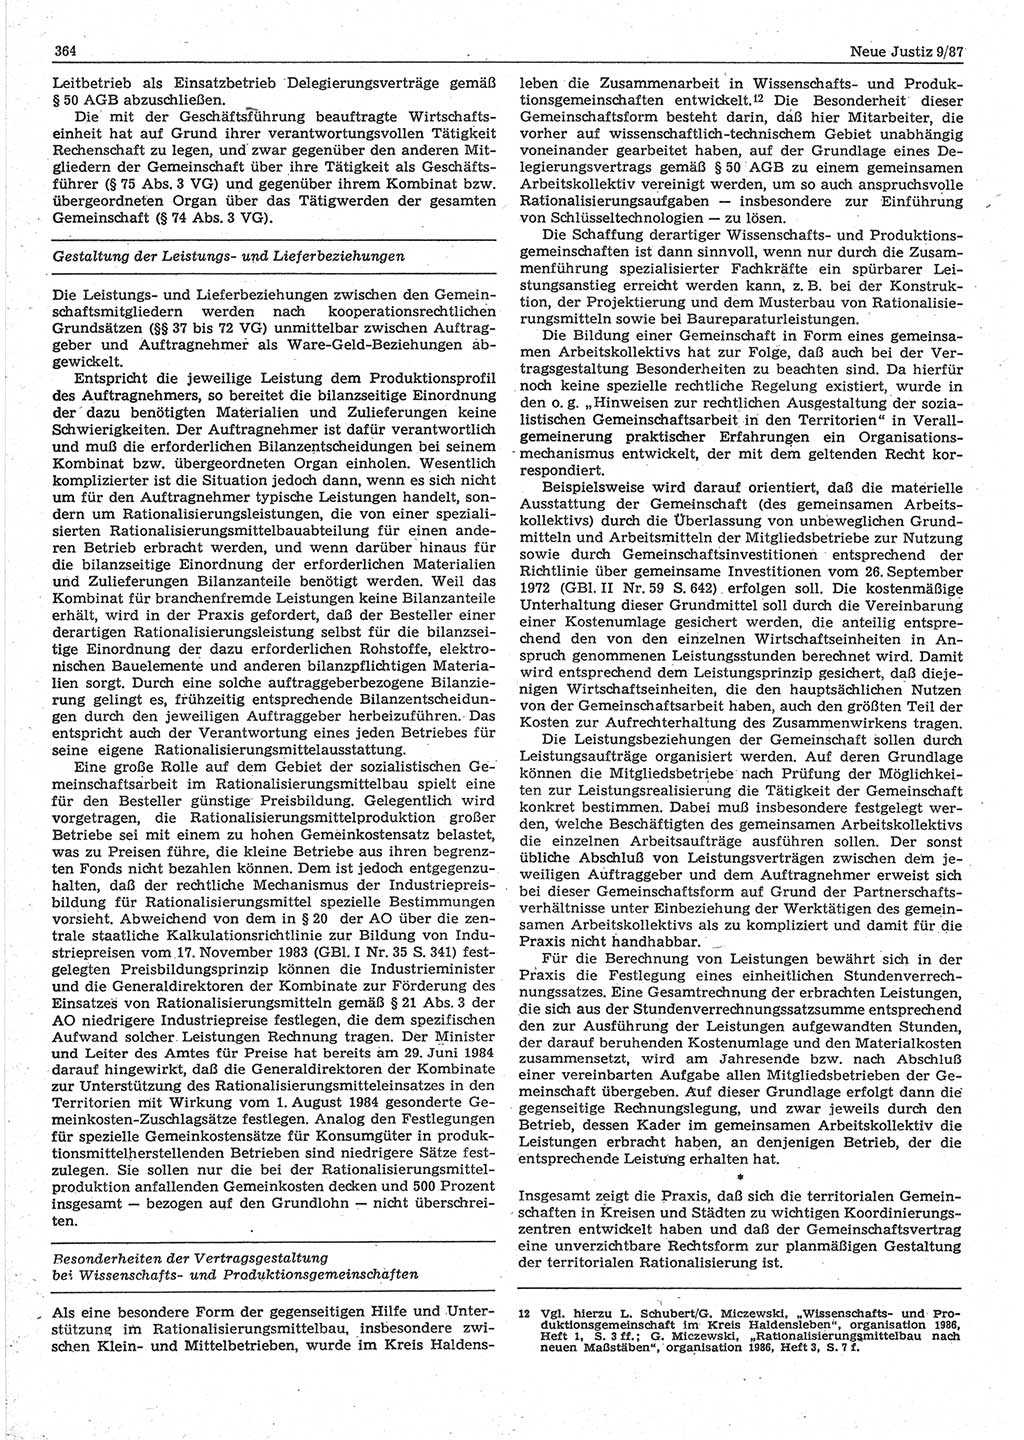 Neue Justiz (NJ), Zeitschrift für sozialistisches Recht und Gesetzlichkeit [Deutsche Demokratische Republik (DDR)], 41. Jahrgang 1987, Seite 364 (NJ DDR 1987, S. 364)